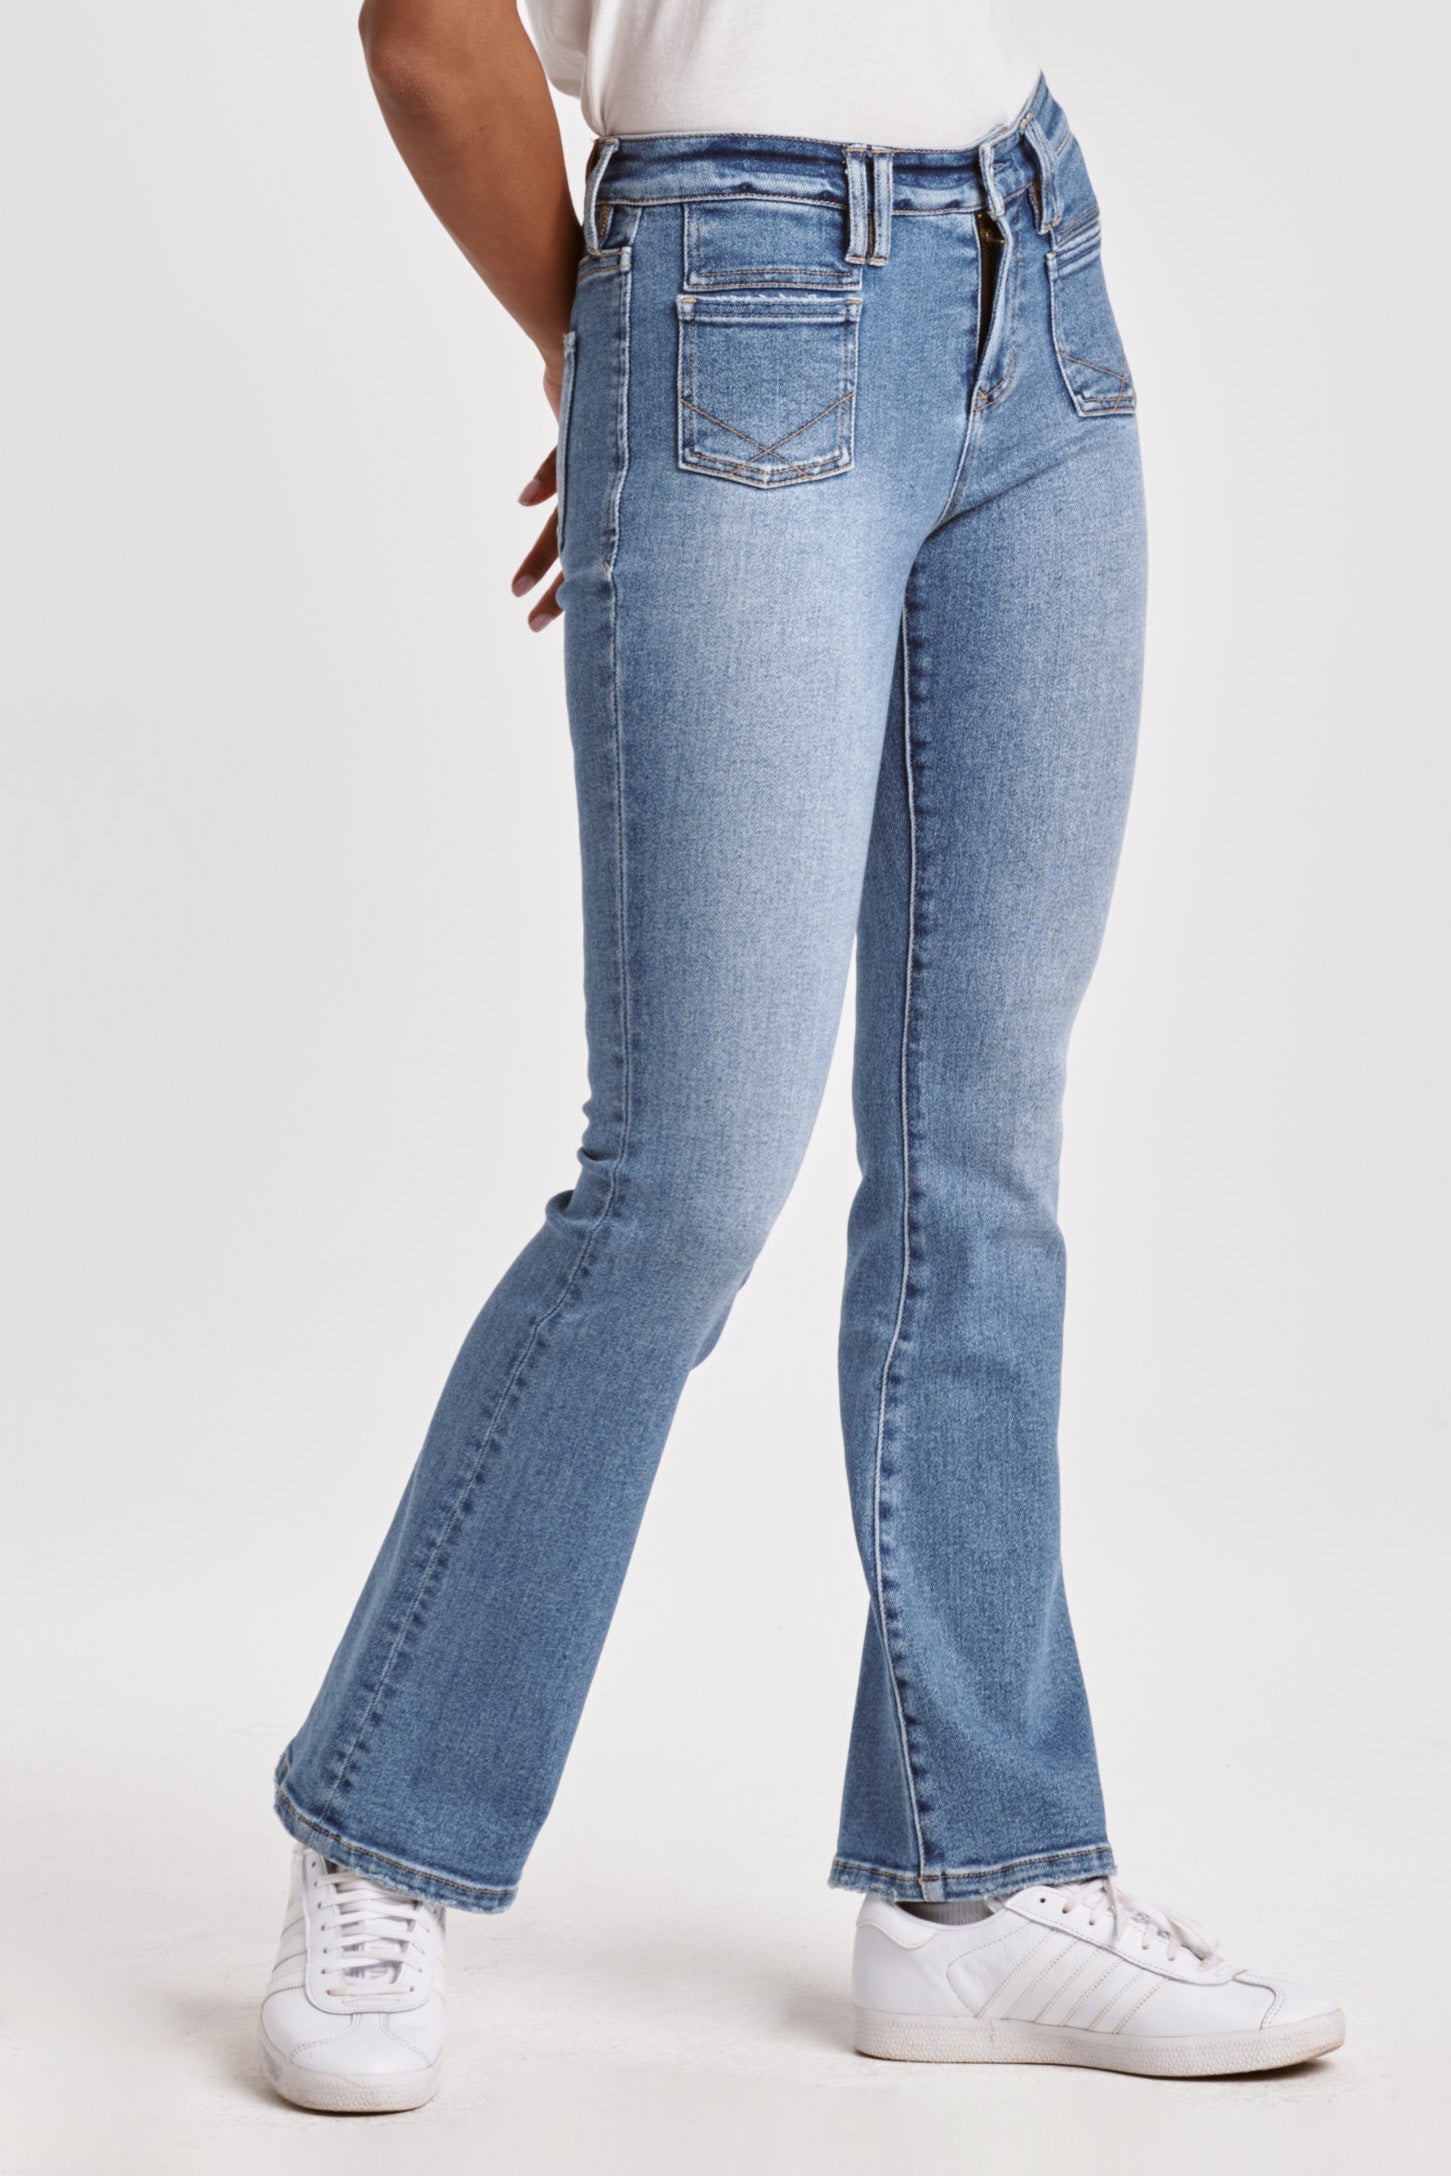 Jaxtyn High Rise Bootcut Jeans